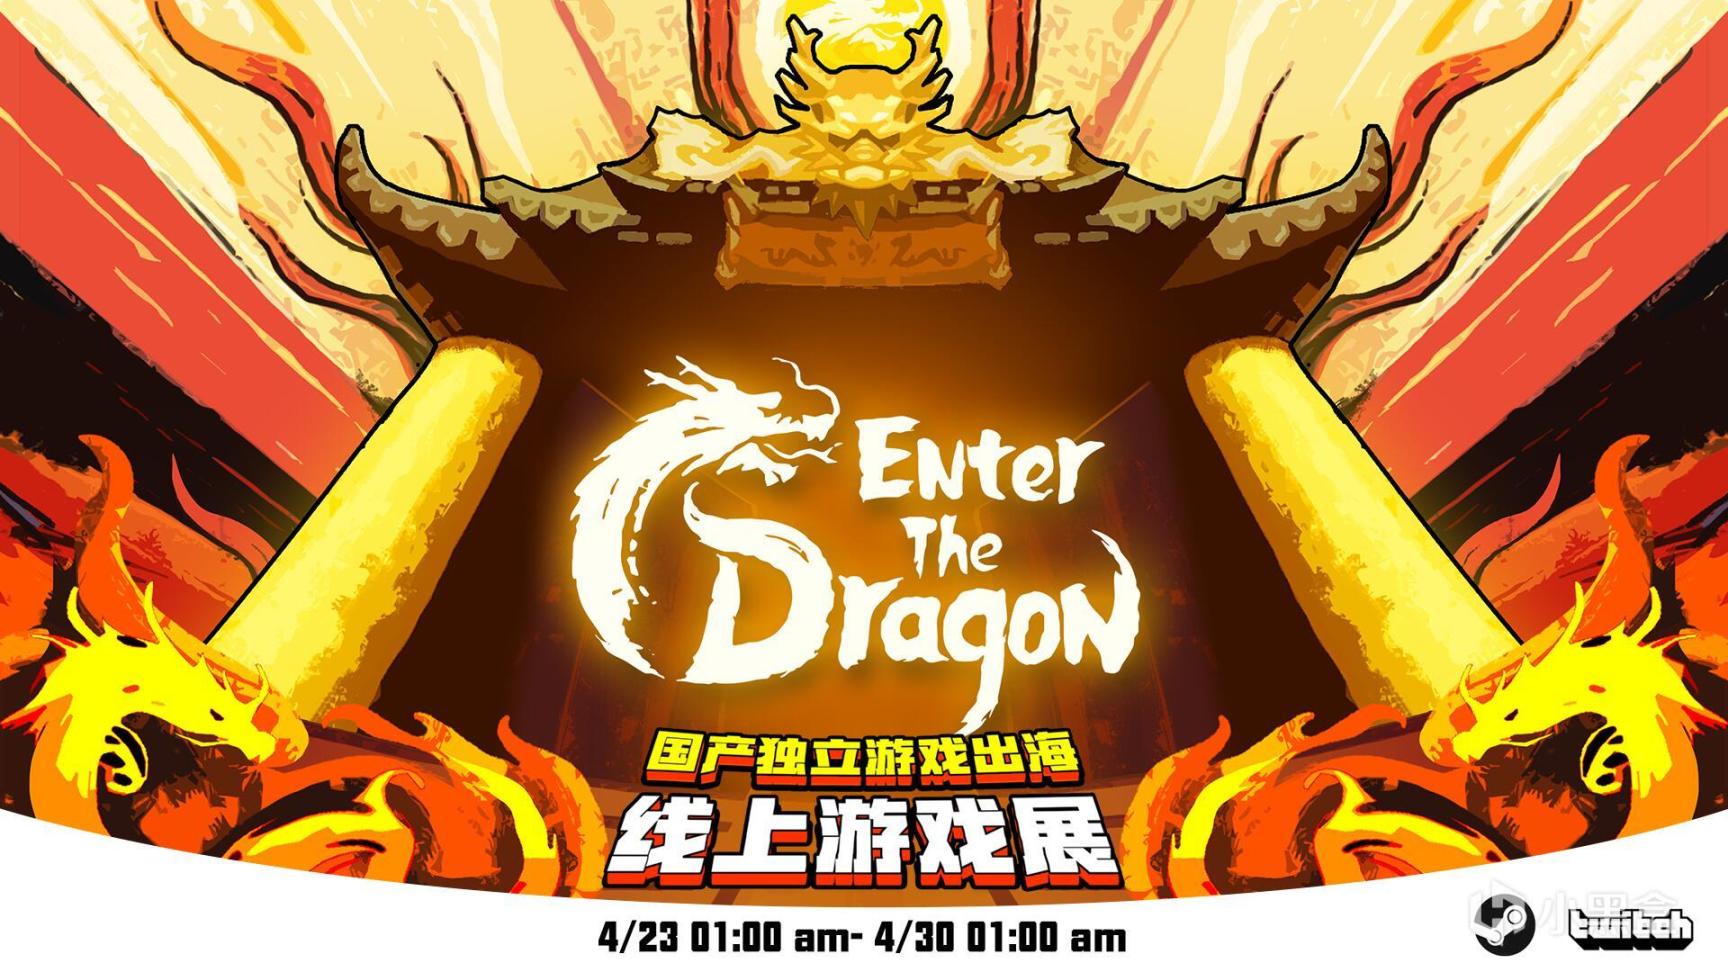 【PC游戏】修仙快讯——Enter the Dragon国际线上独立游戏展来了！